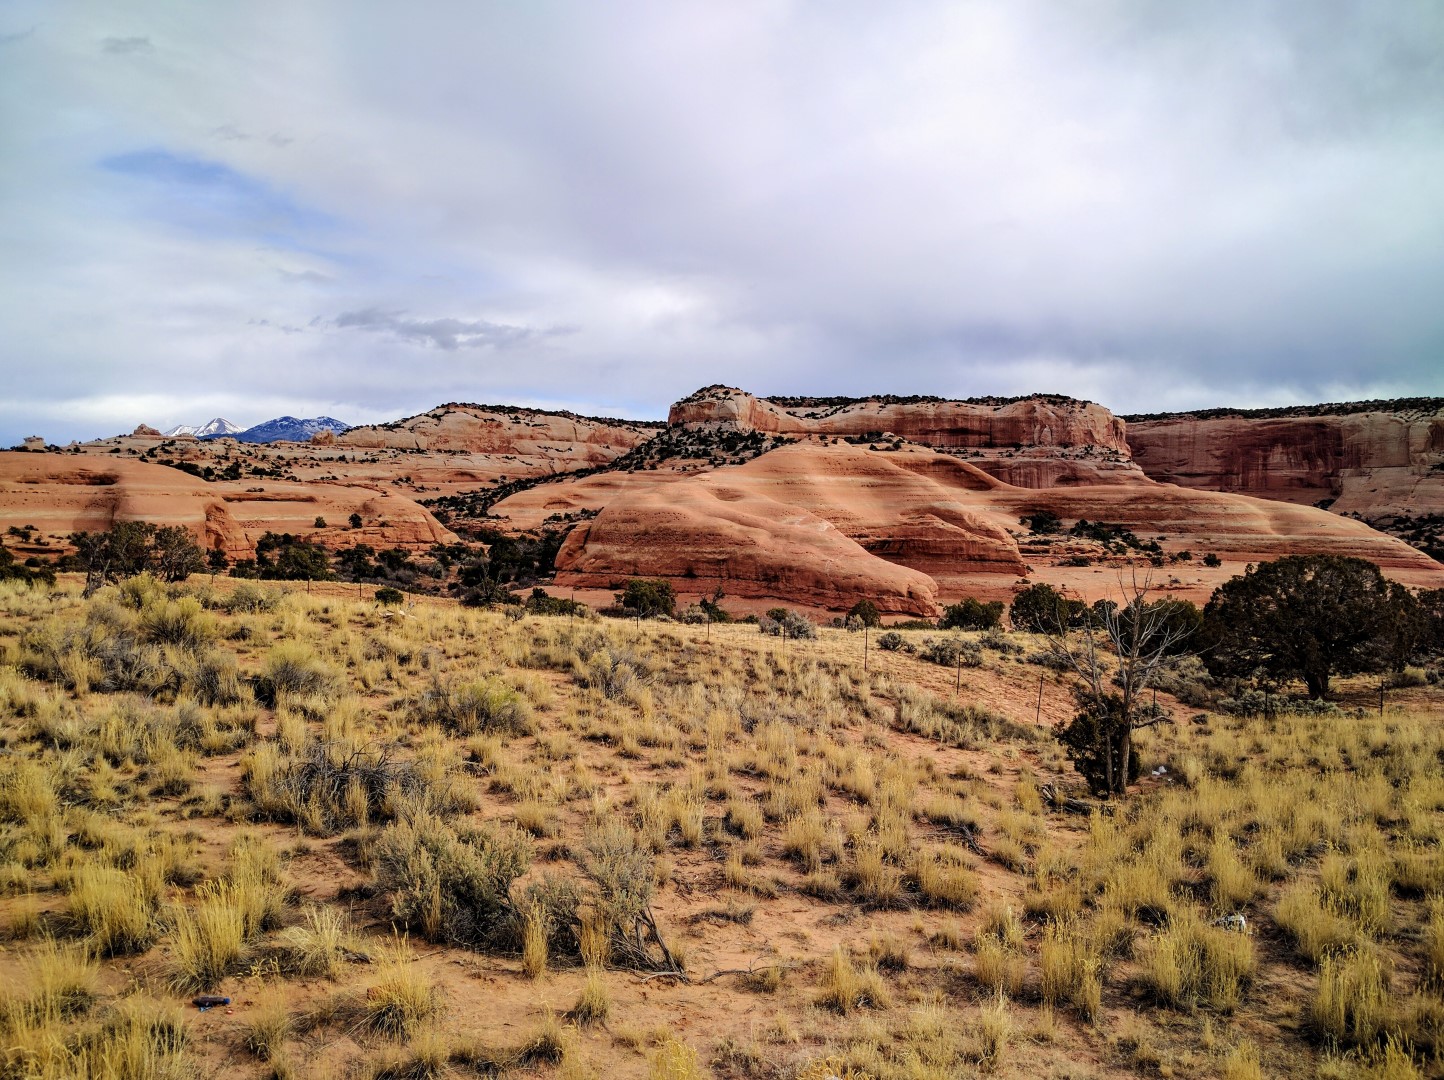 Entering the Moab region in Utah